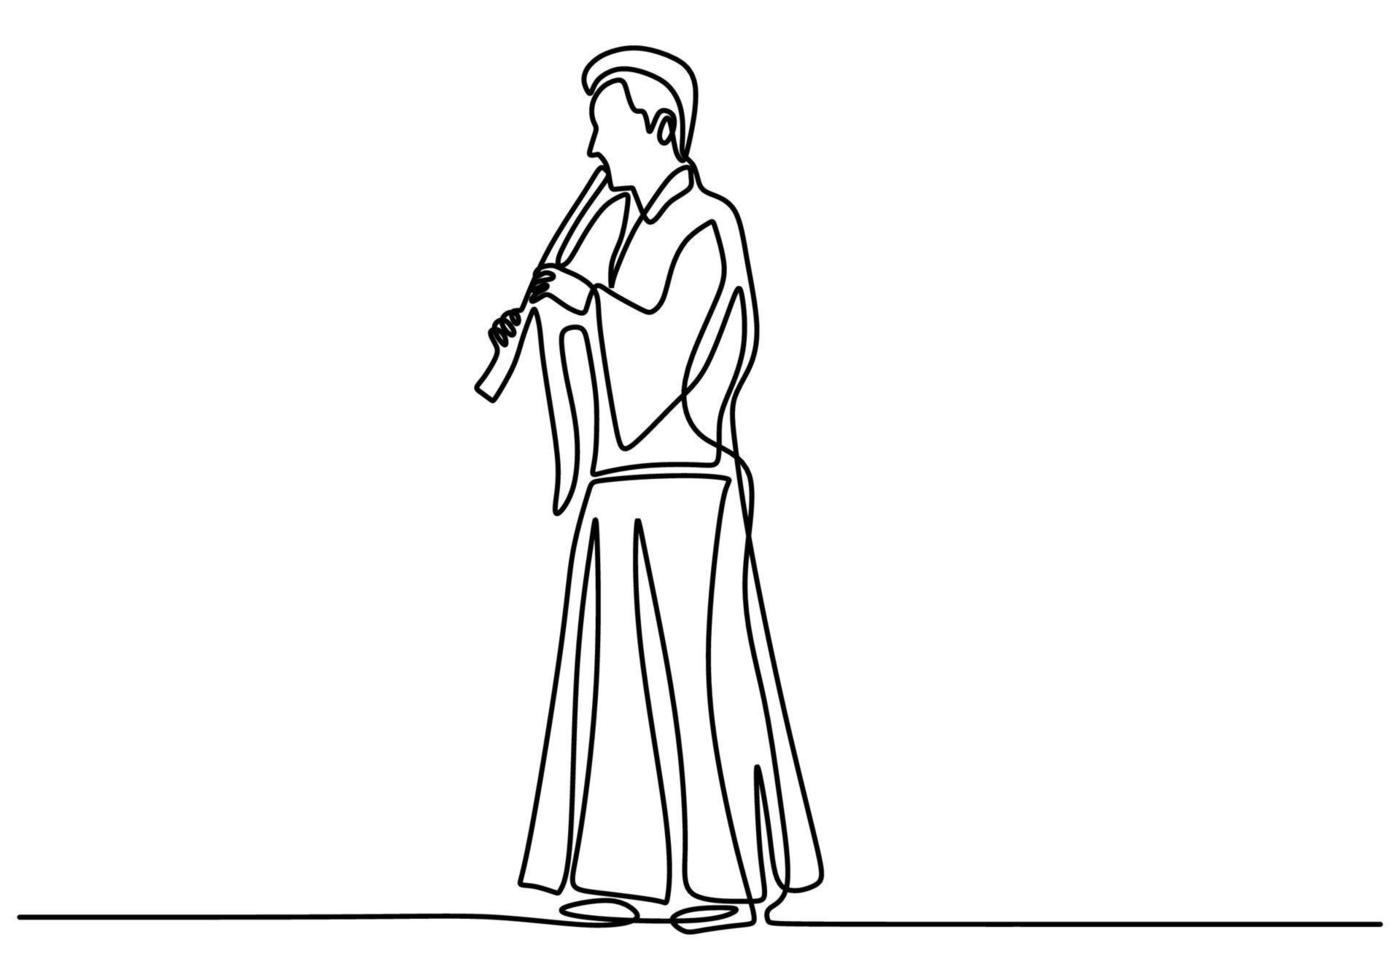 un dibujo continuo de una sola línea de un hombre con flauta shakuhachi, música tradicional japonesa. vector